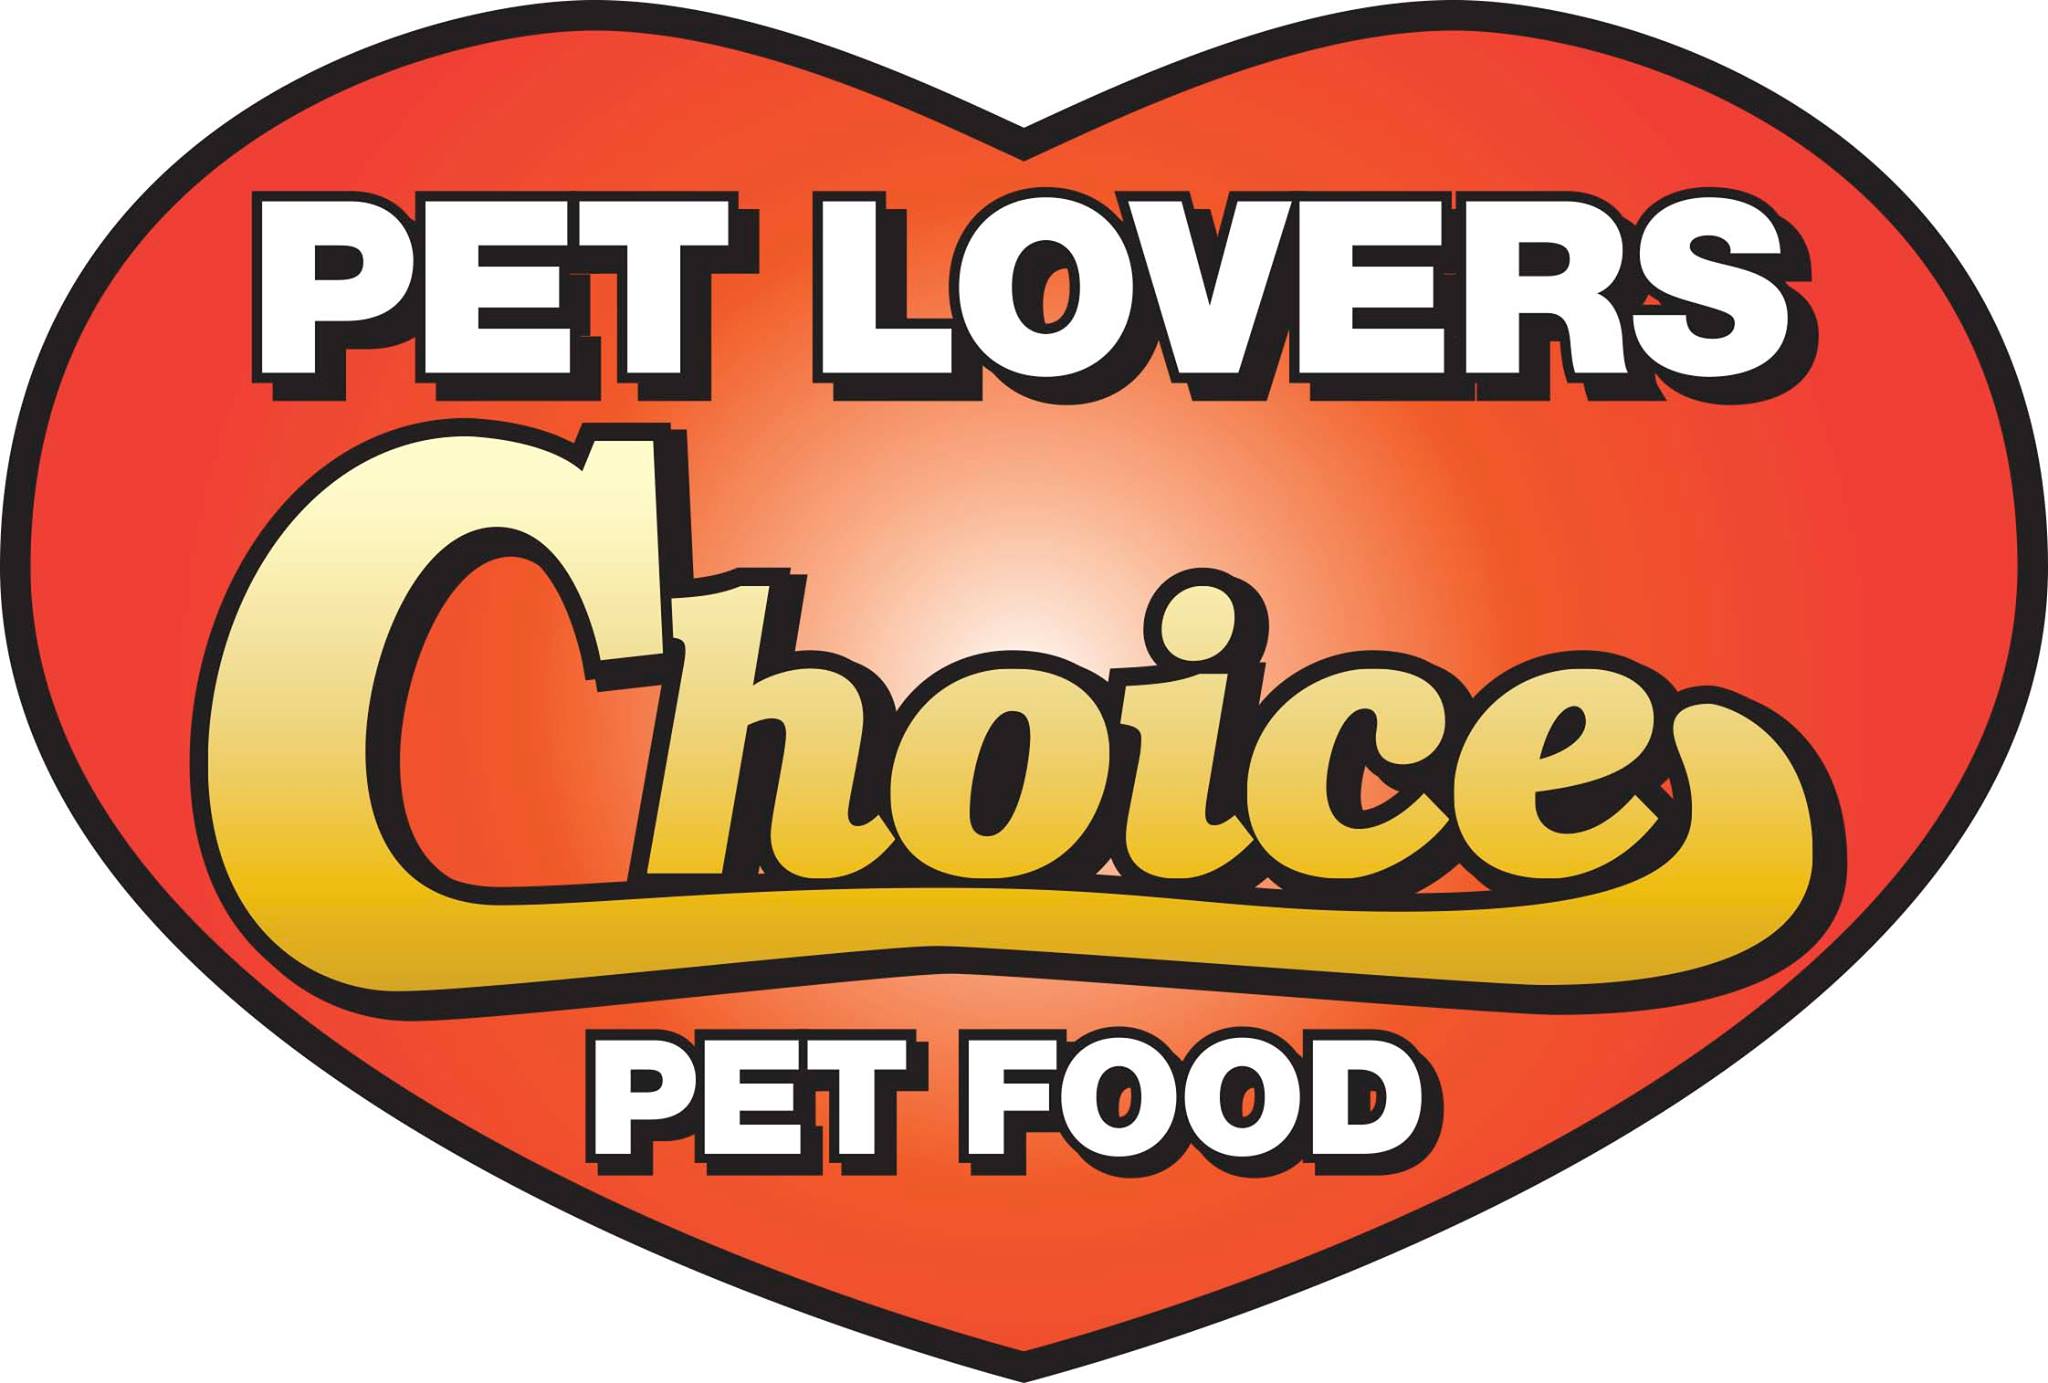 Pet Lovers' Choice - Beef, Chicken, Organ & Veg - 5lbs